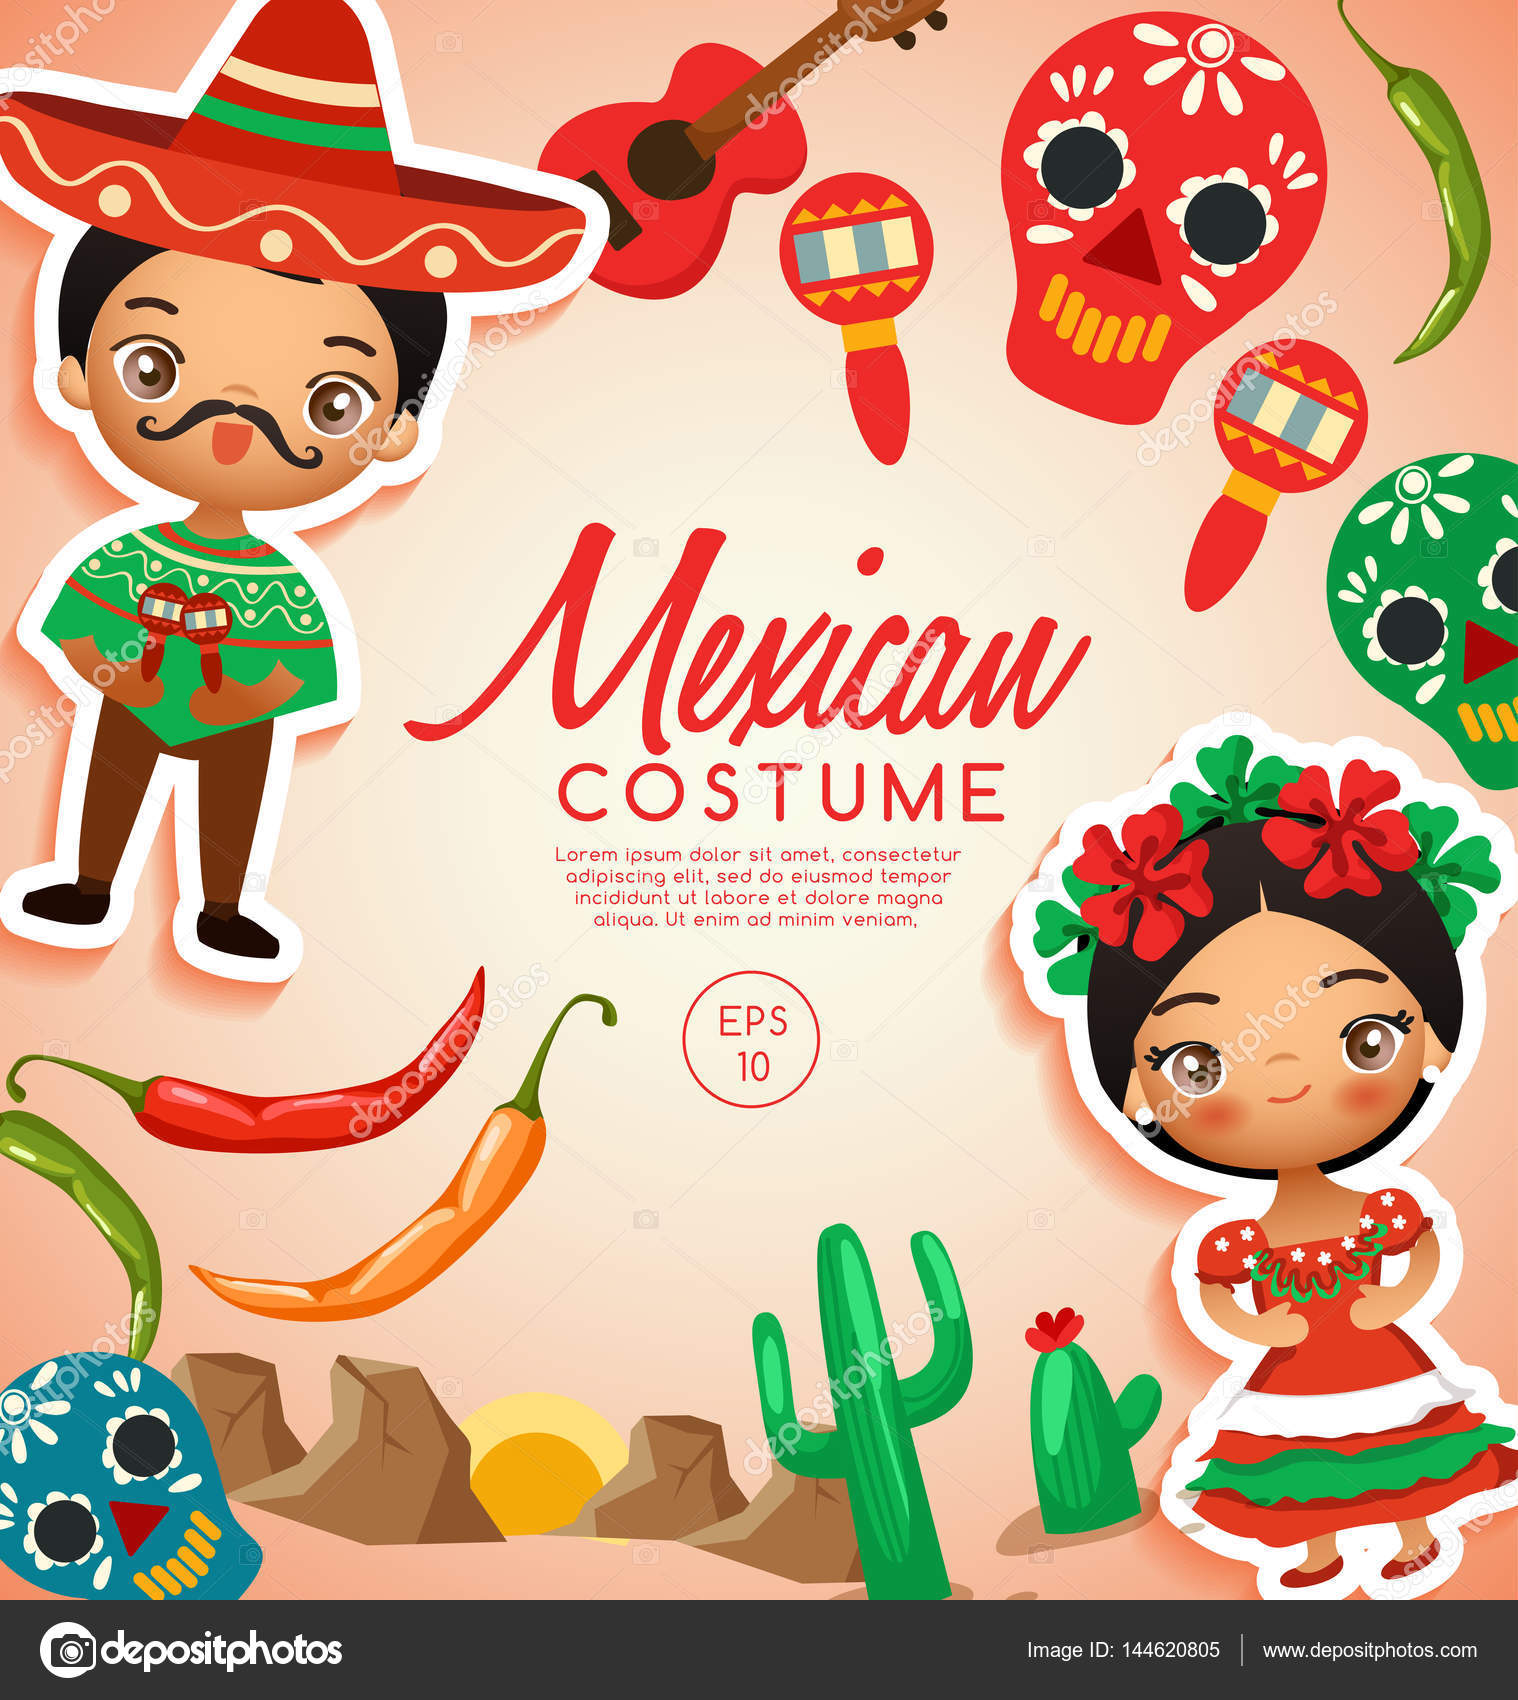 Vestido tipico mexico imágenes de stock de arte vectorial | Depositphotos